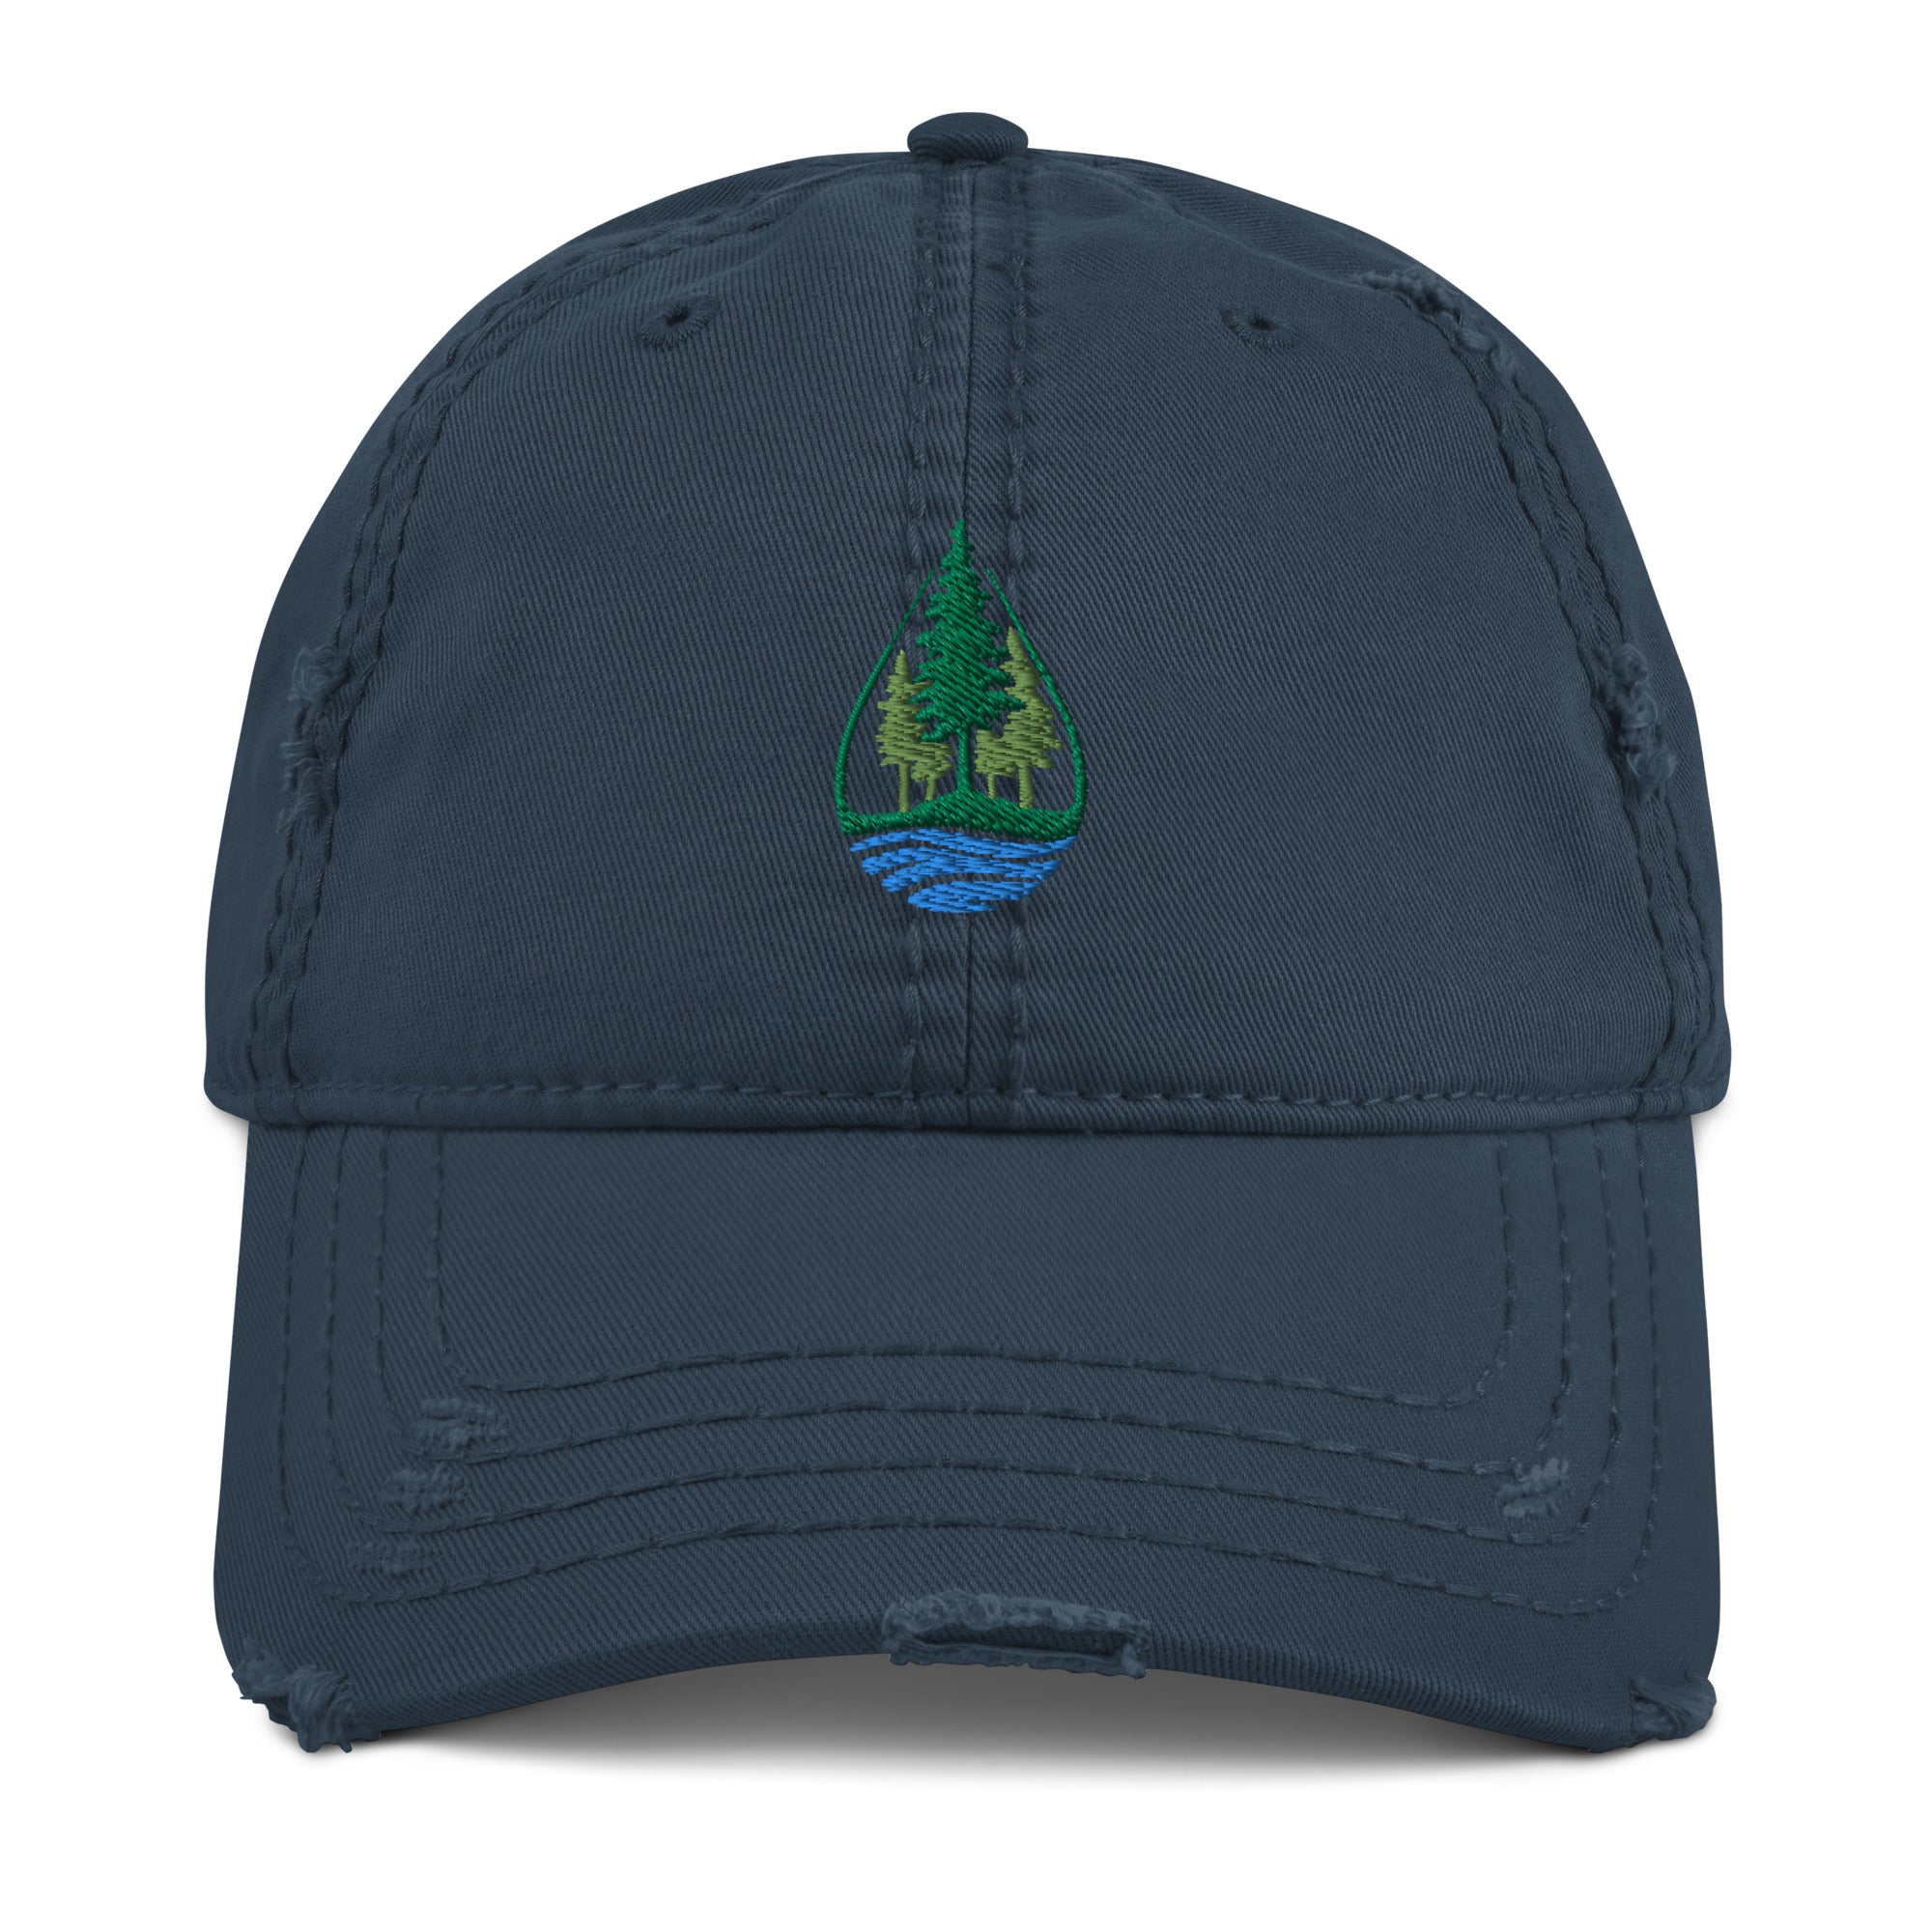 Lake & Pine Trees Distressed Hat